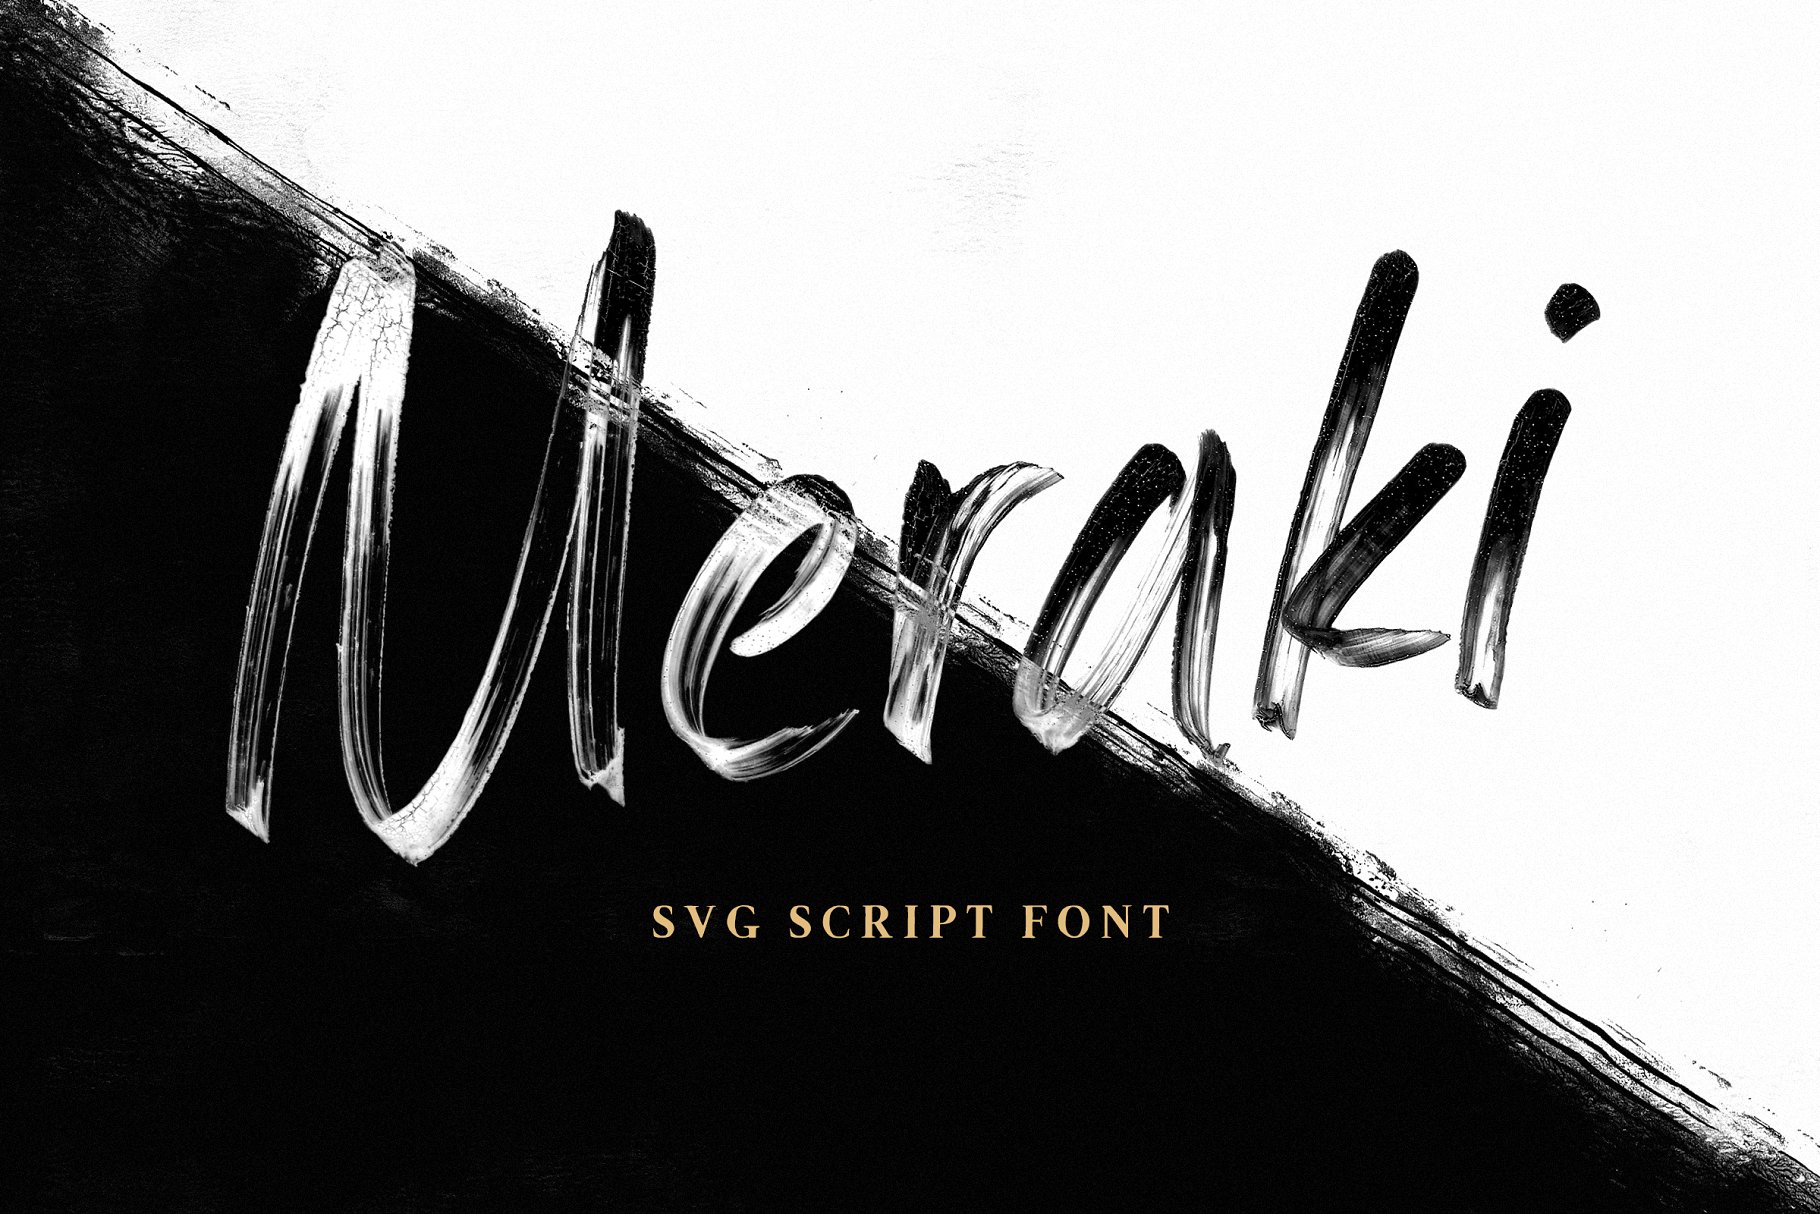 手写SVG脚本英文马克笔字体 Meraki SVG Script Font插图